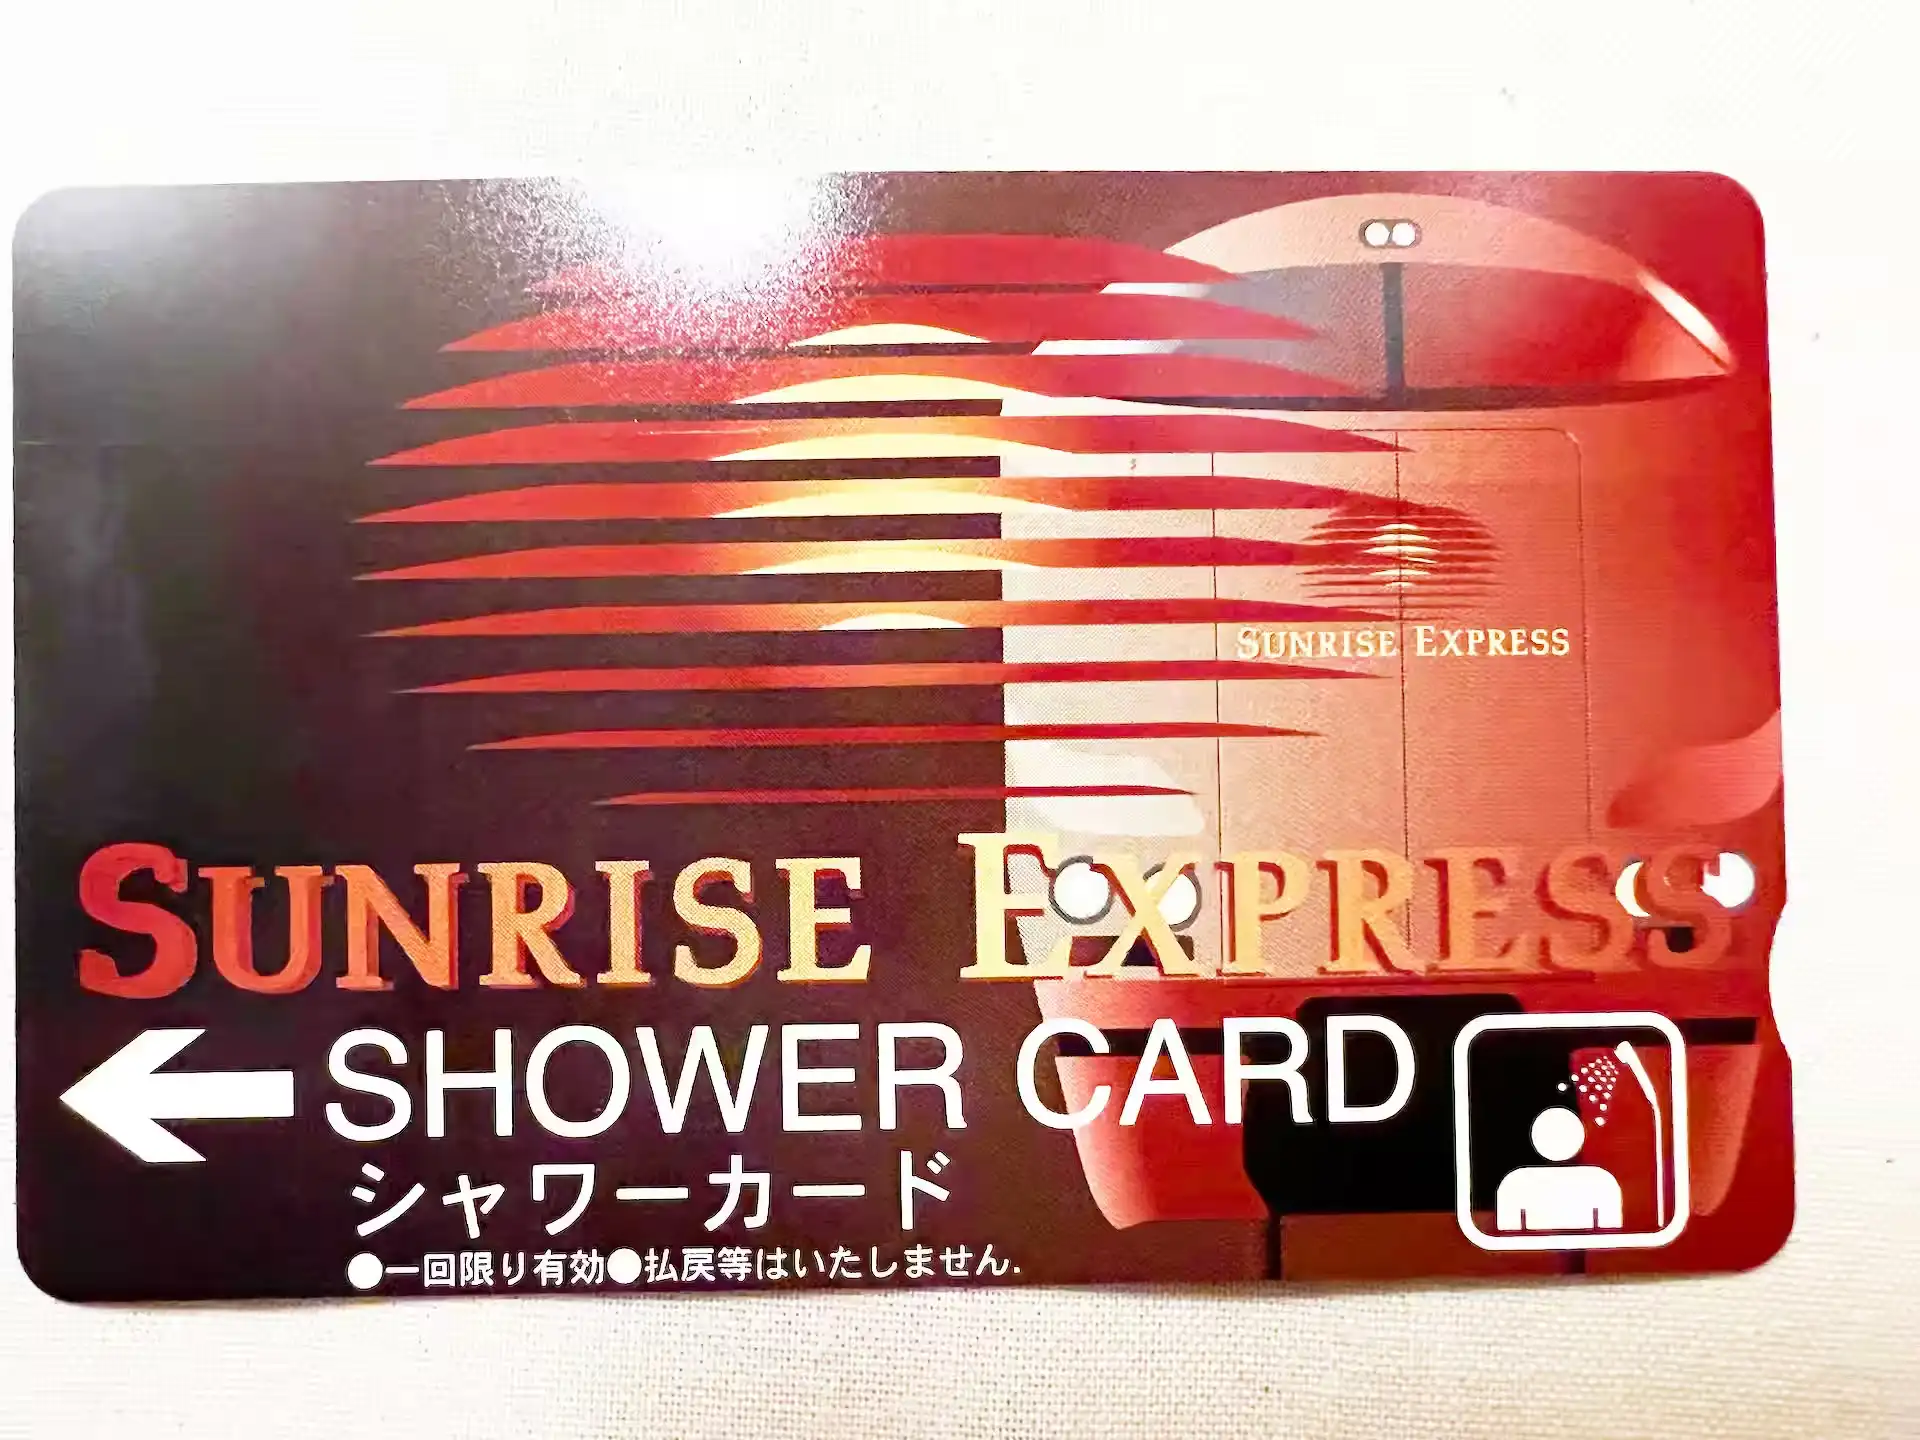 Shower card for the sleeper express Sunrise Izumo